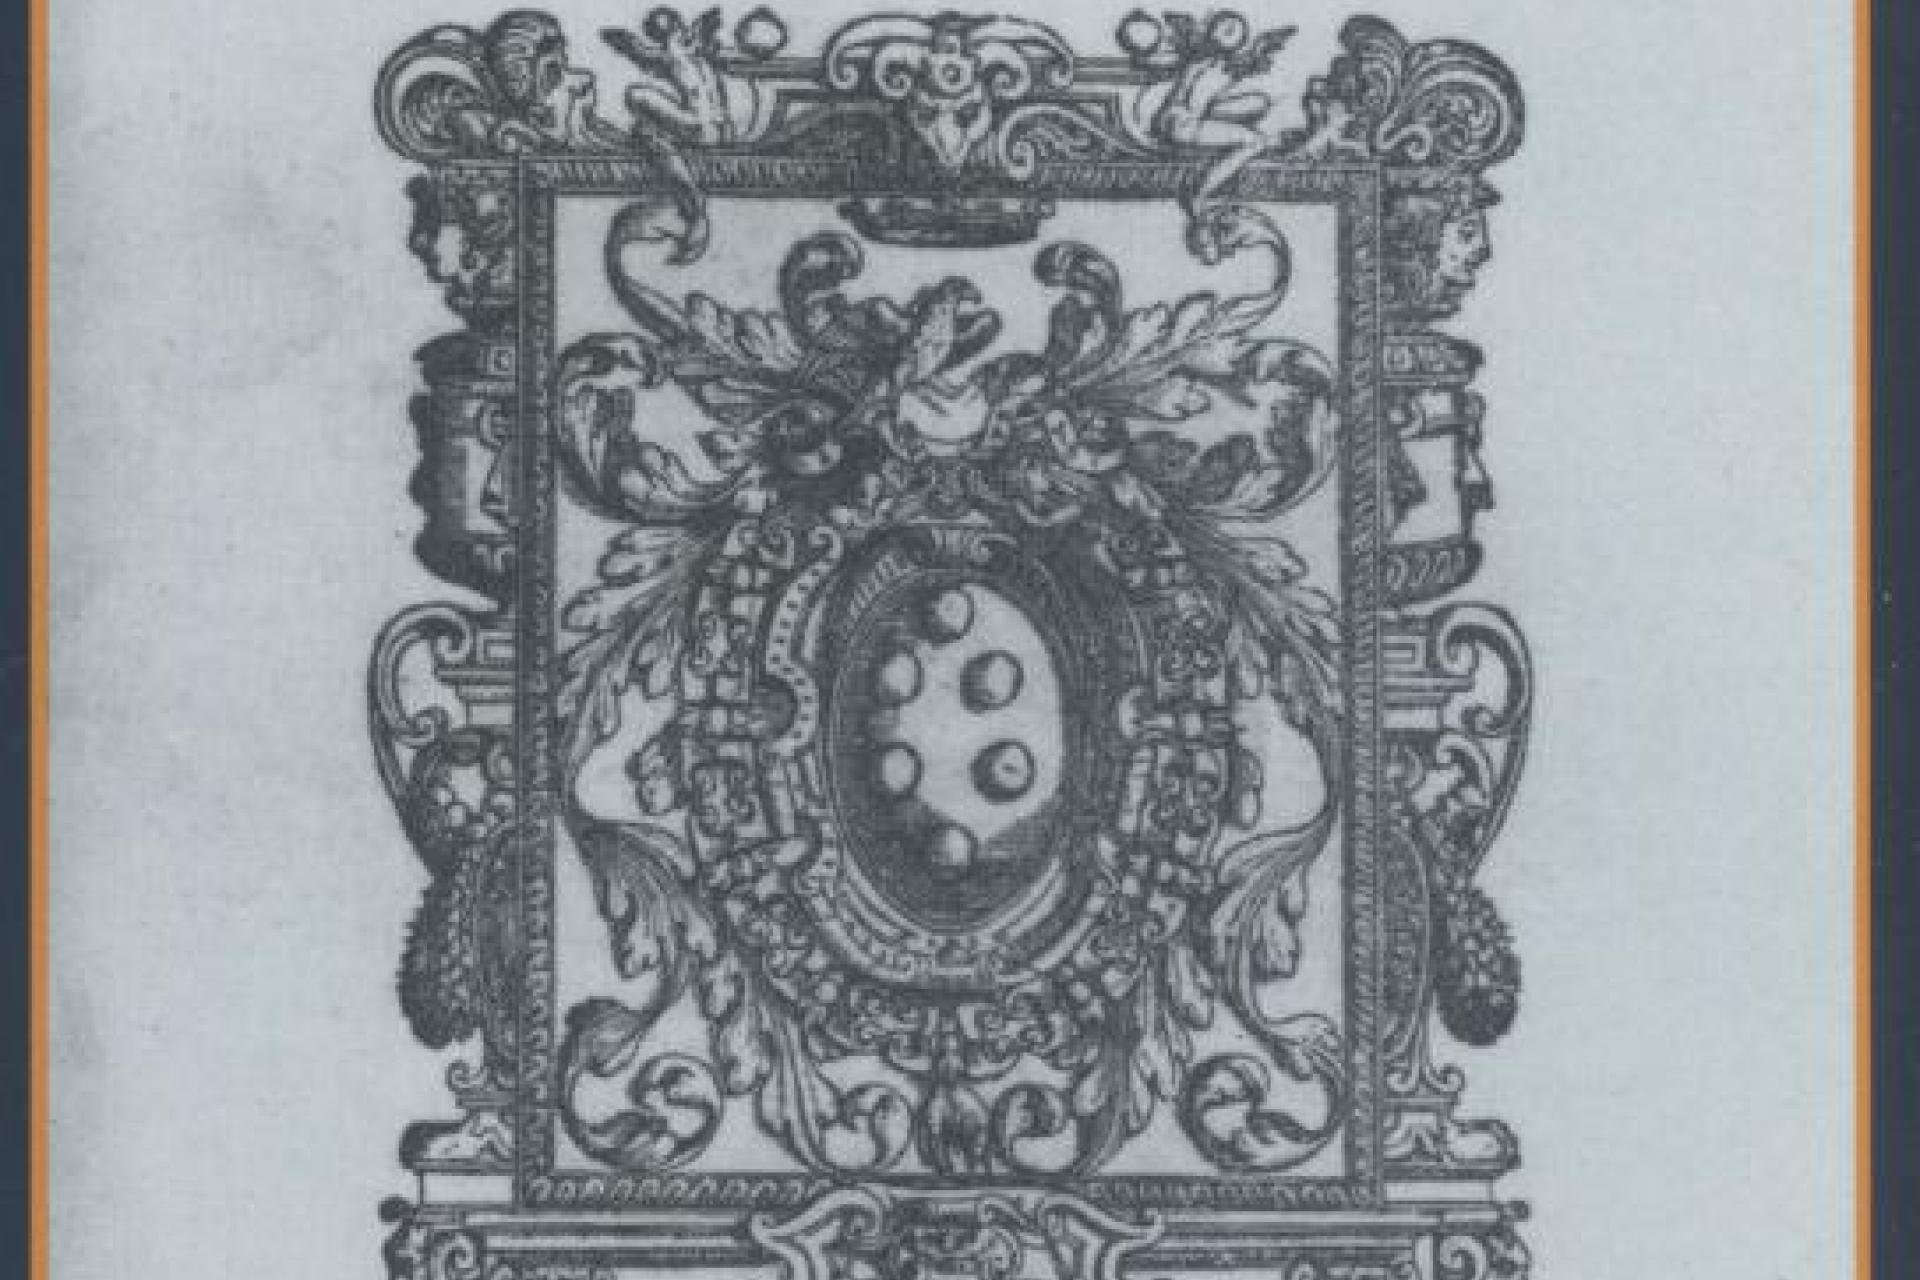 Het titelblad van de Digesta van Laurentius Torrentinus.